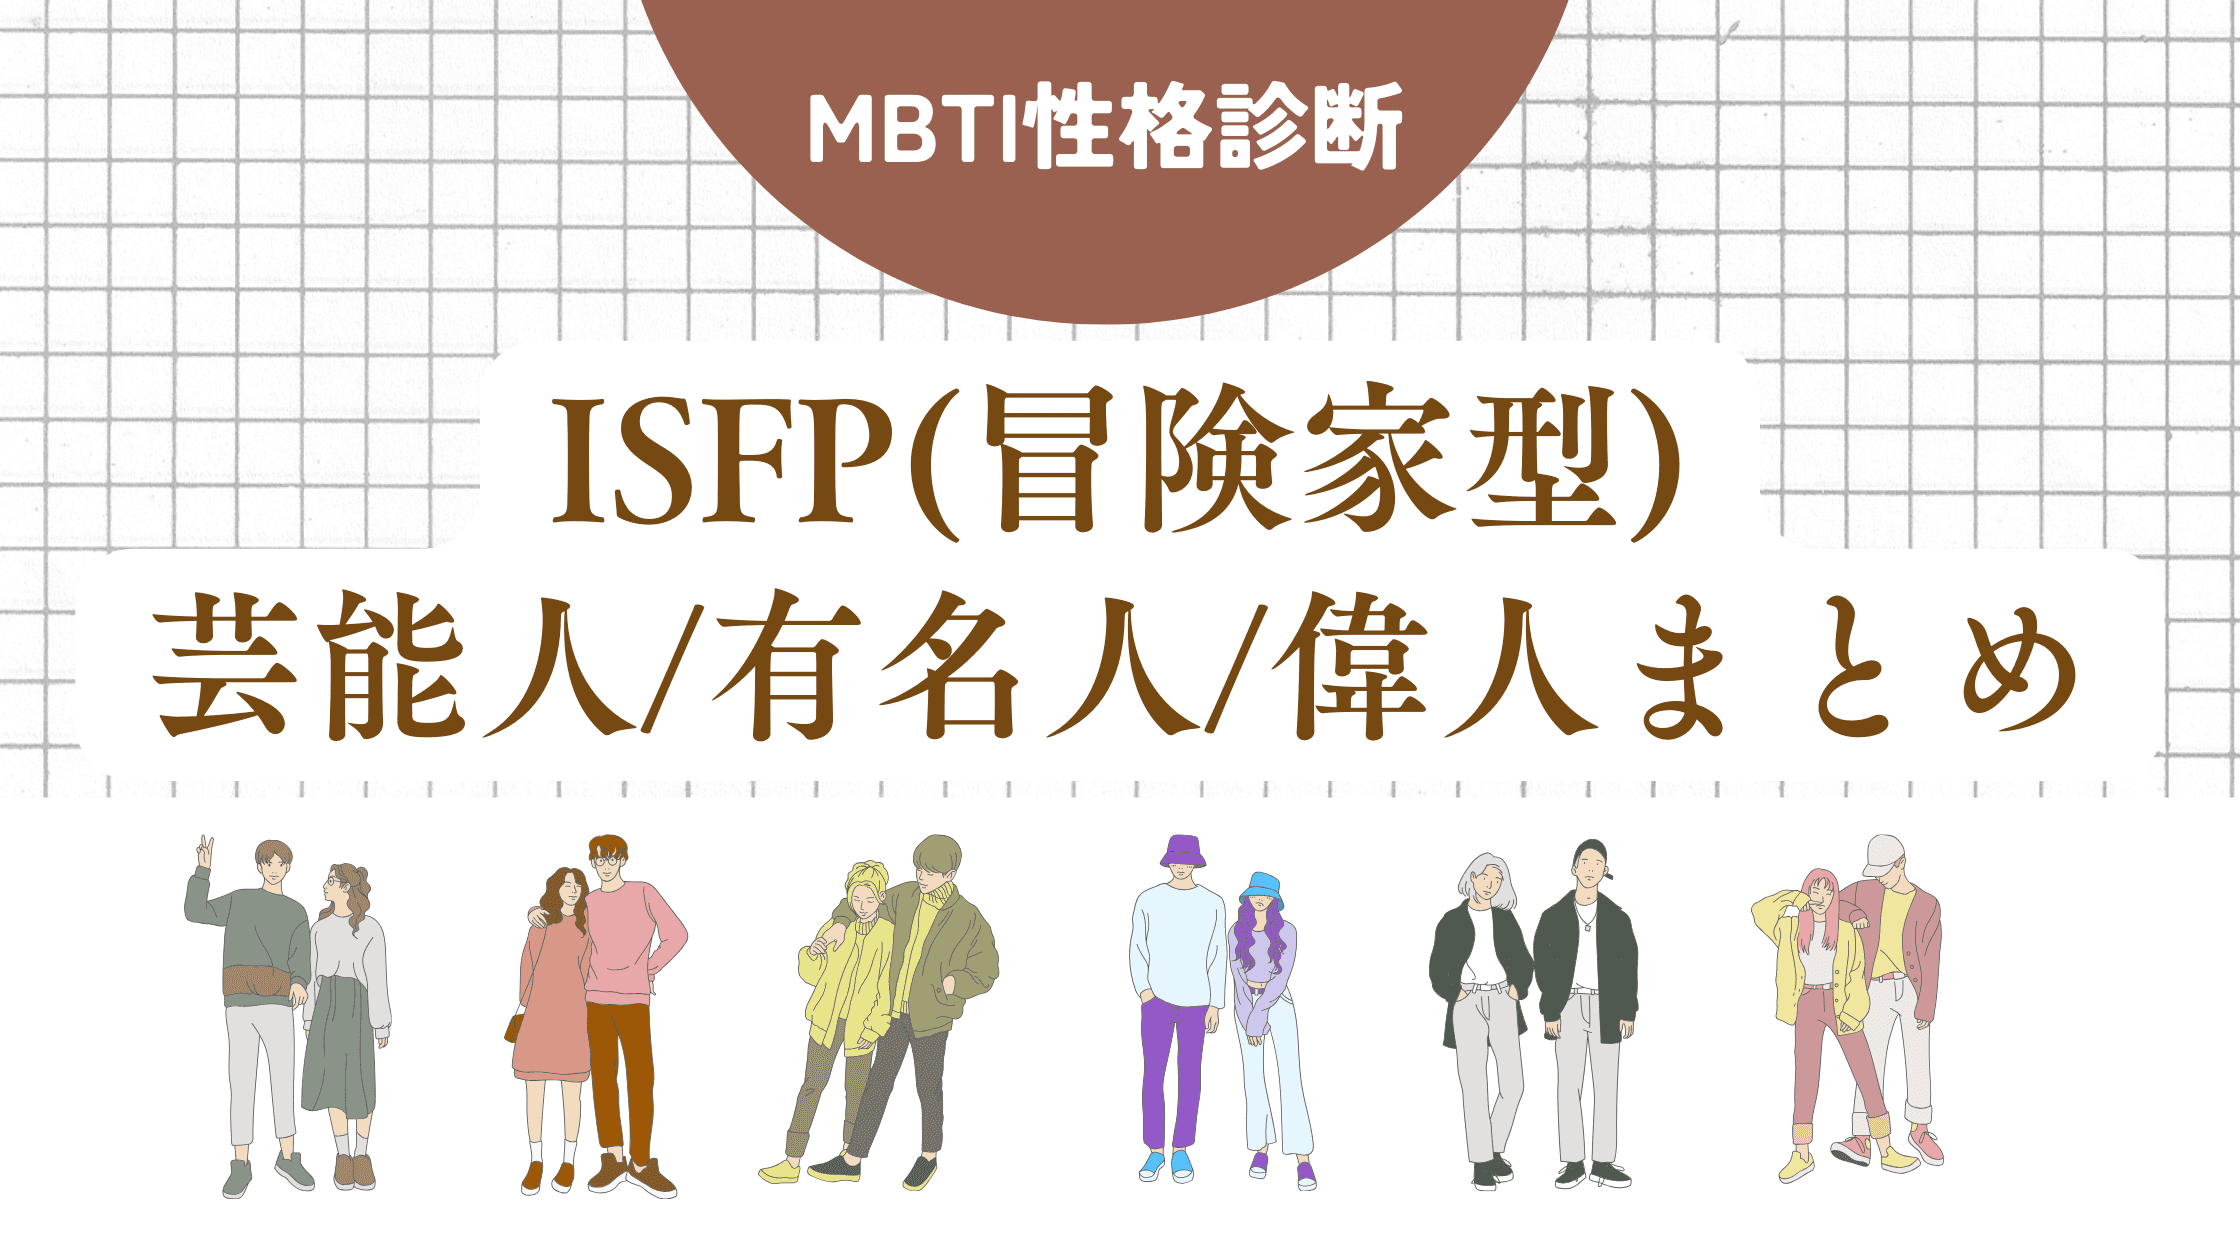 ISFP(冒険家型)芸能人